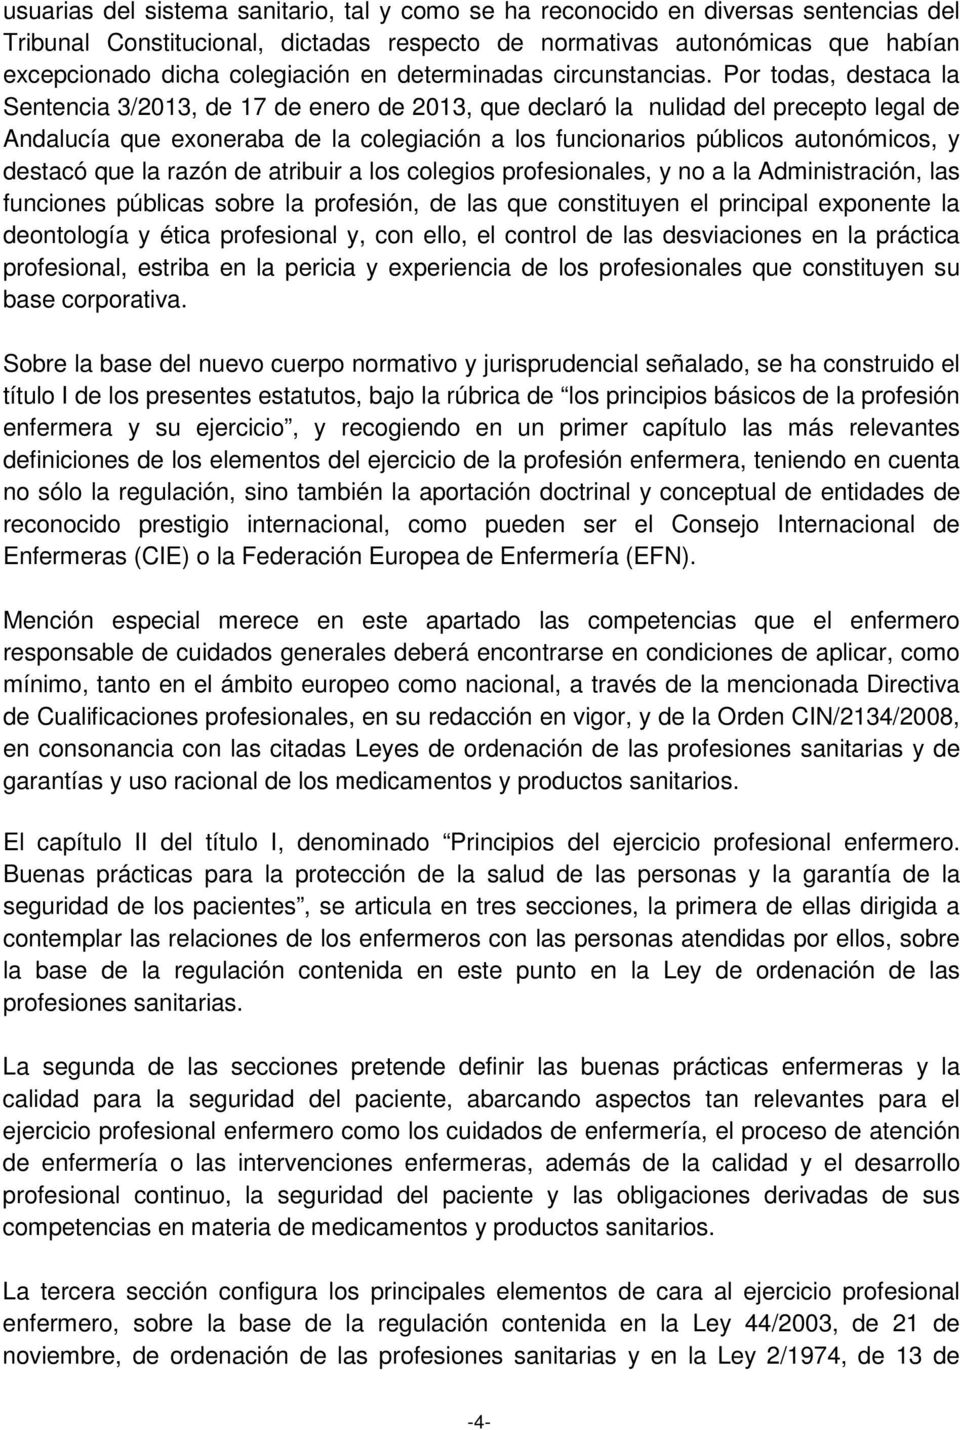 Por todas, destaca la Sentencia 3/2013, de 17 de enero de 2013, que declaró la nulidad del precepto legal de Andalucía que exoneraba de la colegiación a los funcionarios públicos autonómicos, y